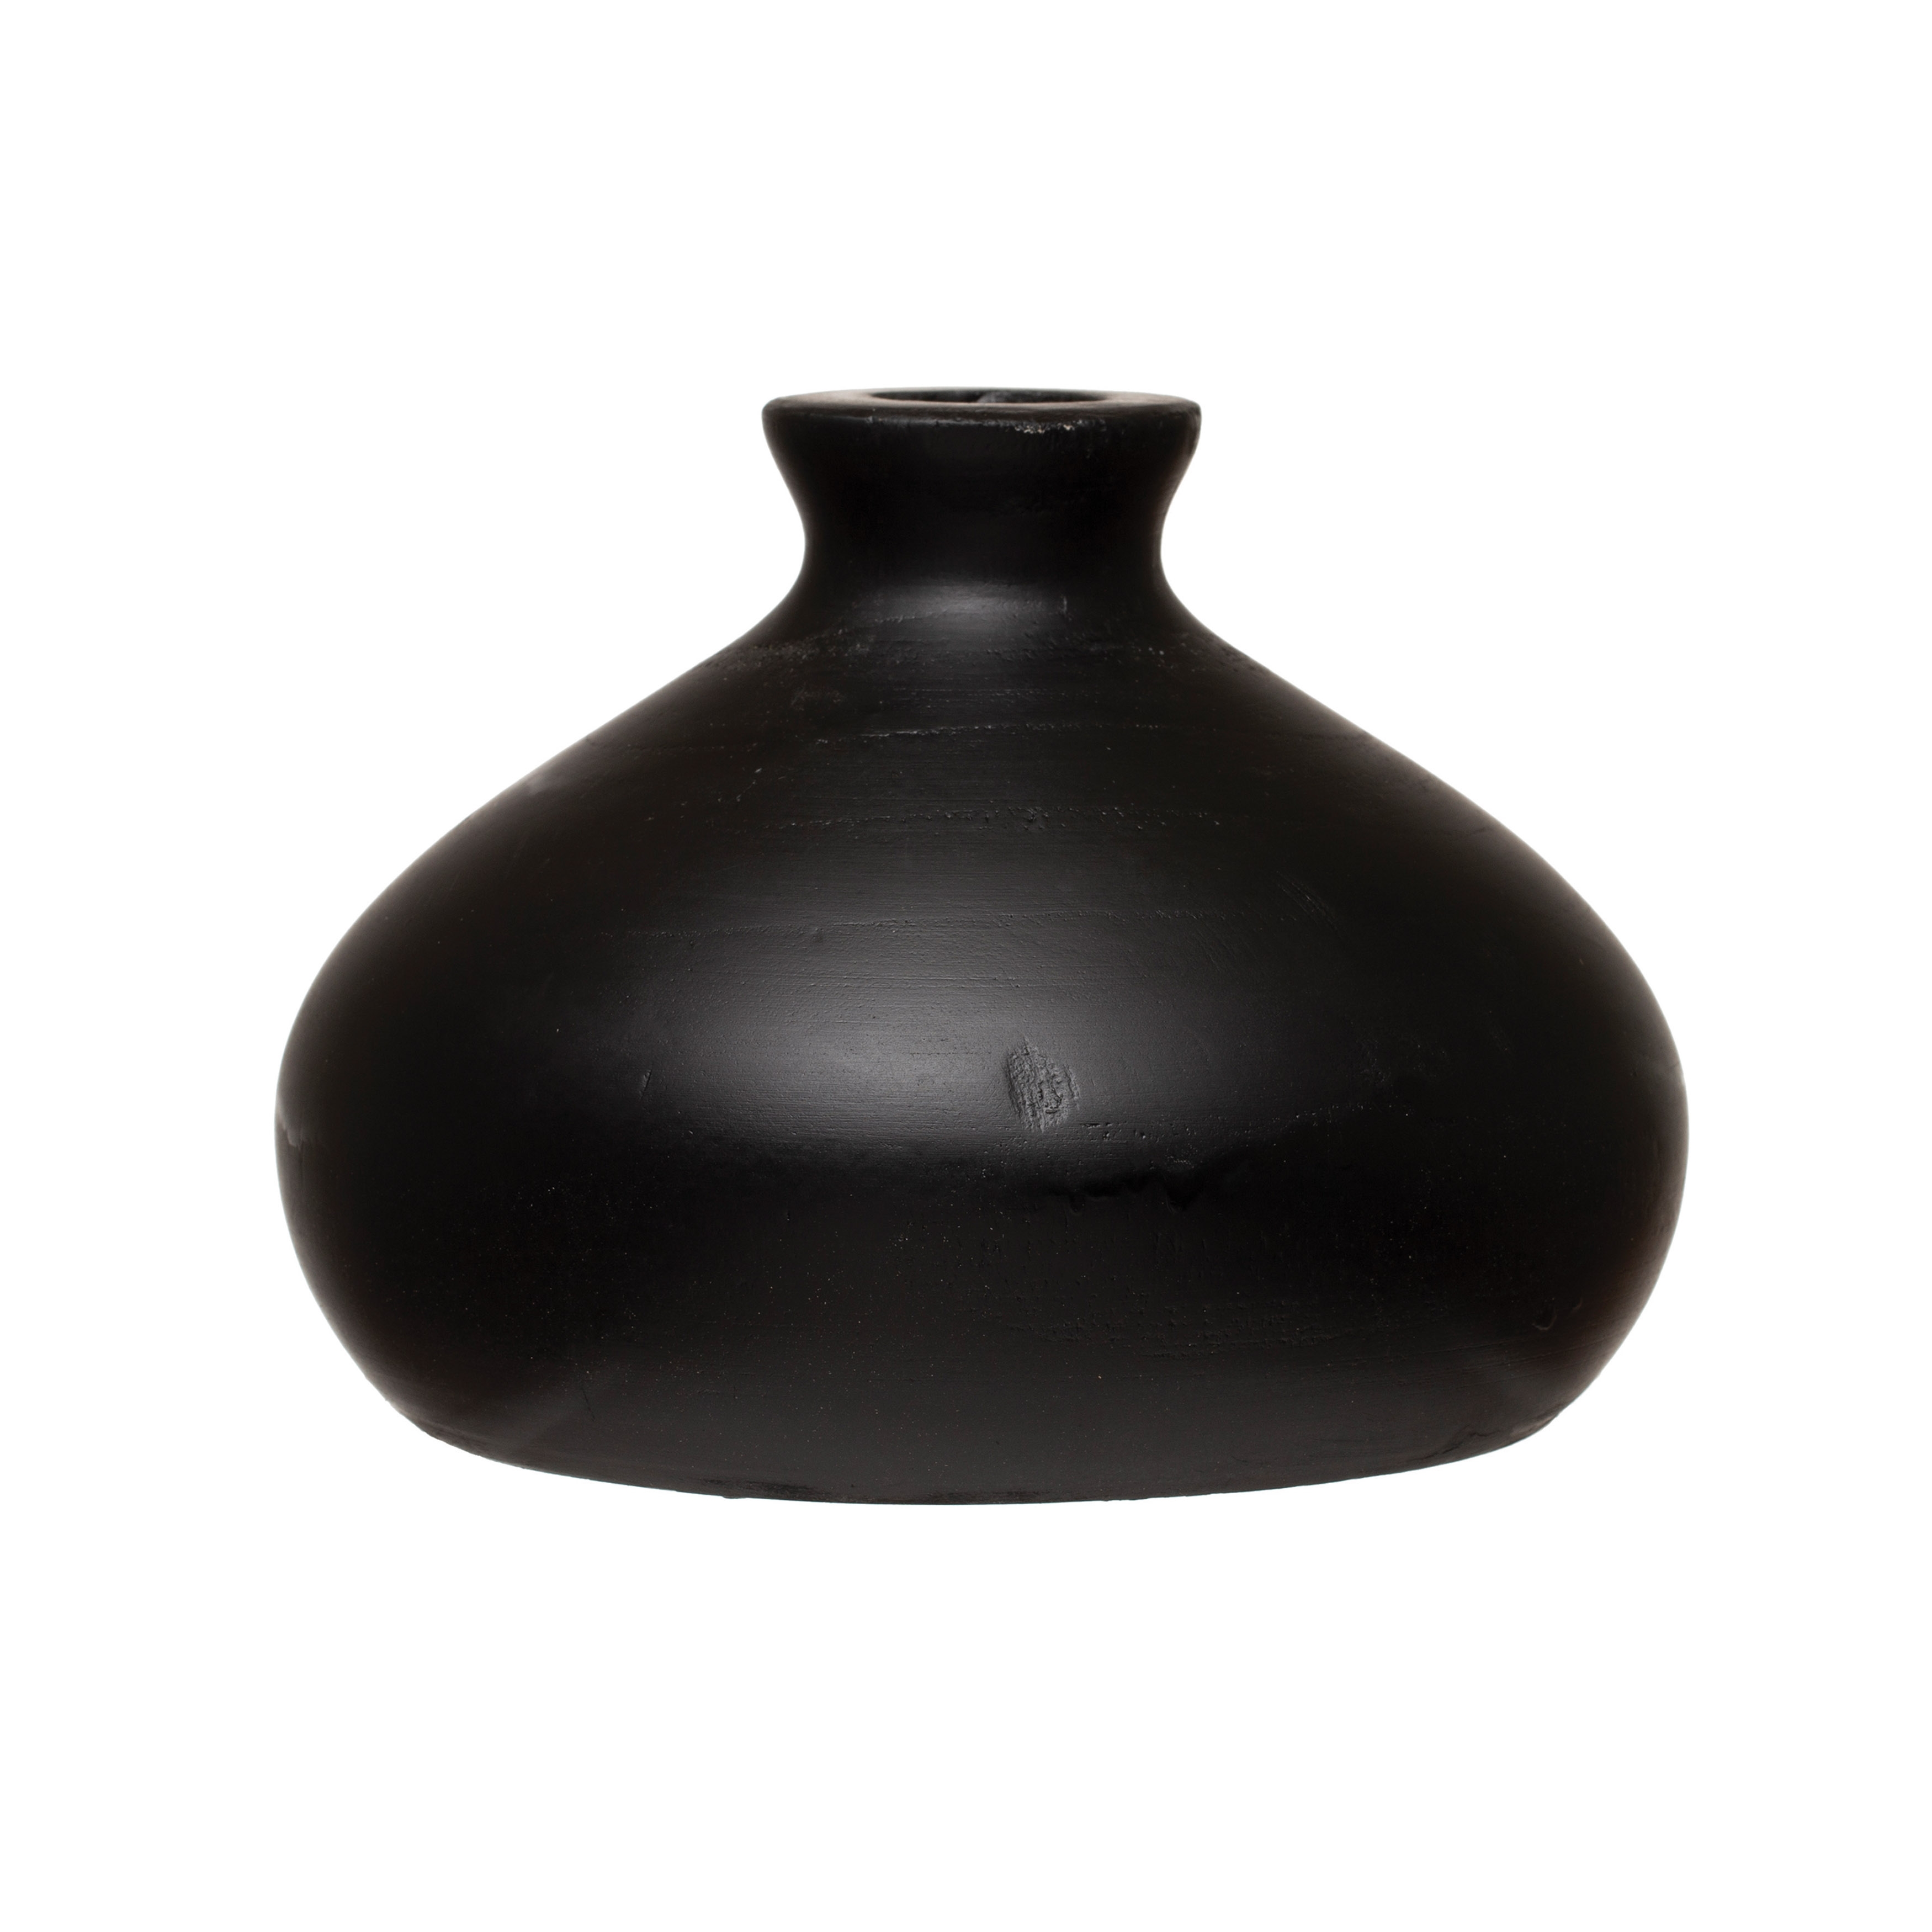 Paulownia Wood Vase, Black & White - Image 0